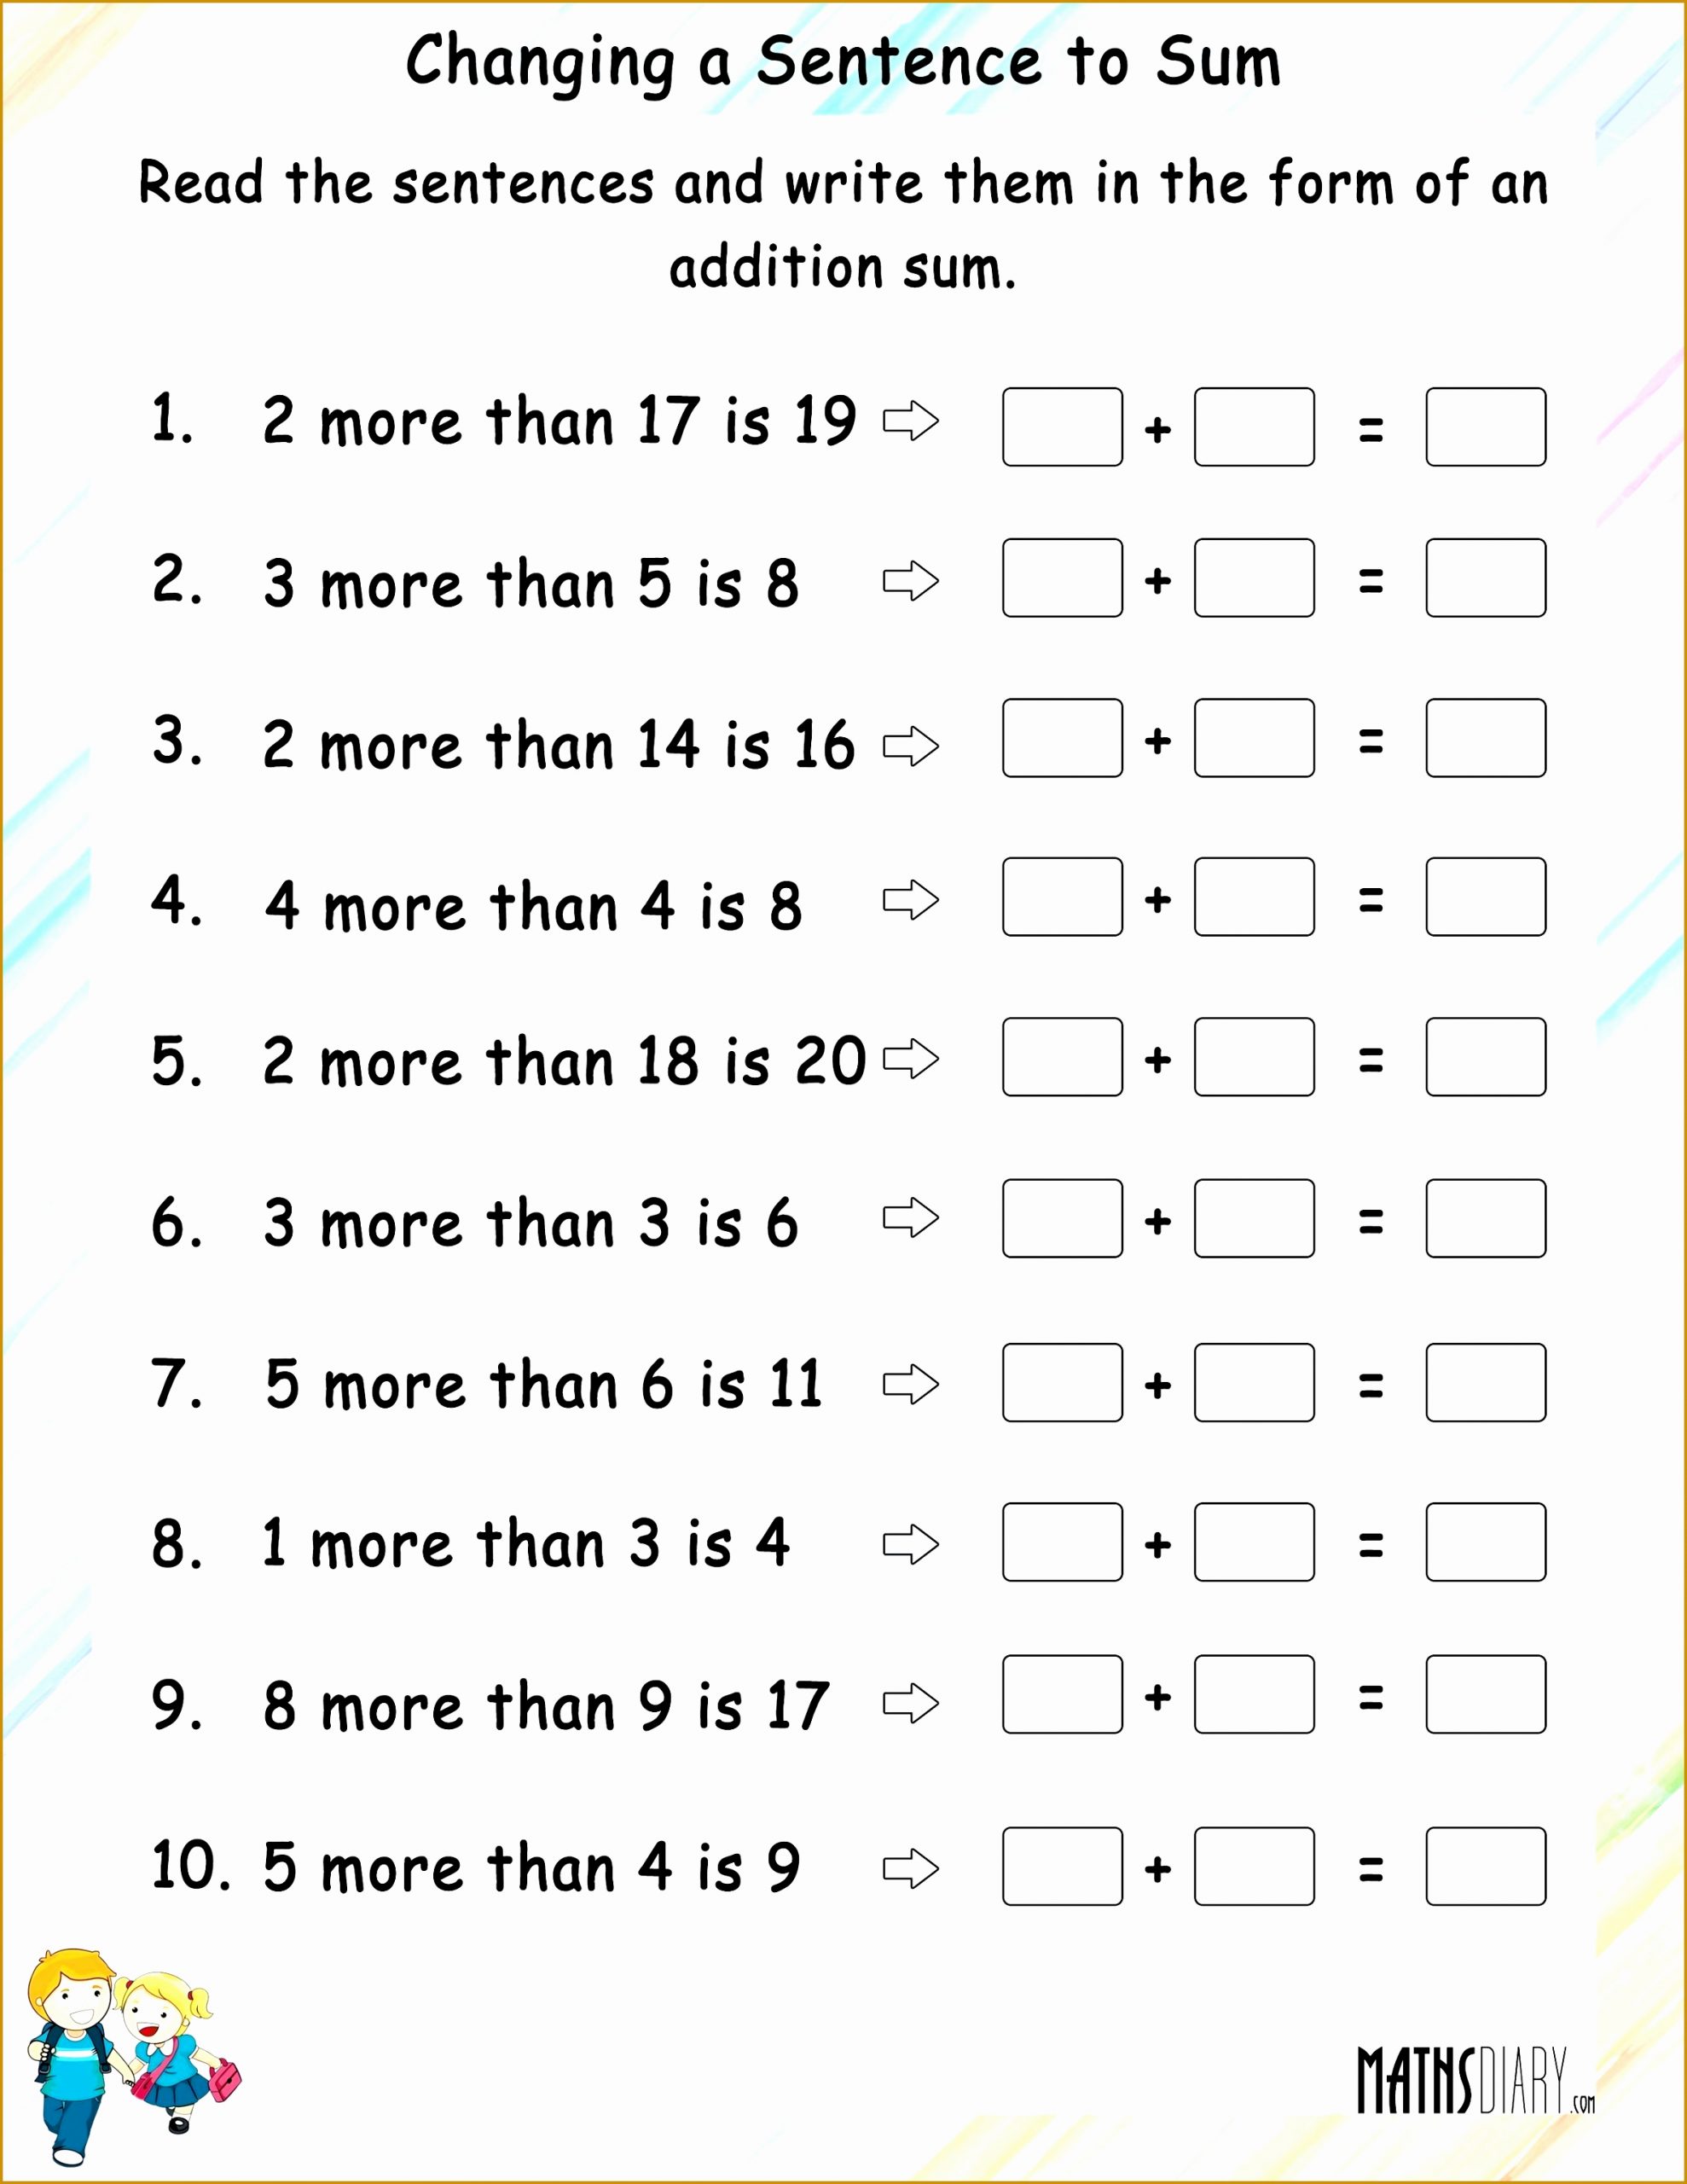 Complex Sentence Worksheets 3rd Grade Elegant 3 Simple and Pound Sentences Worksheet